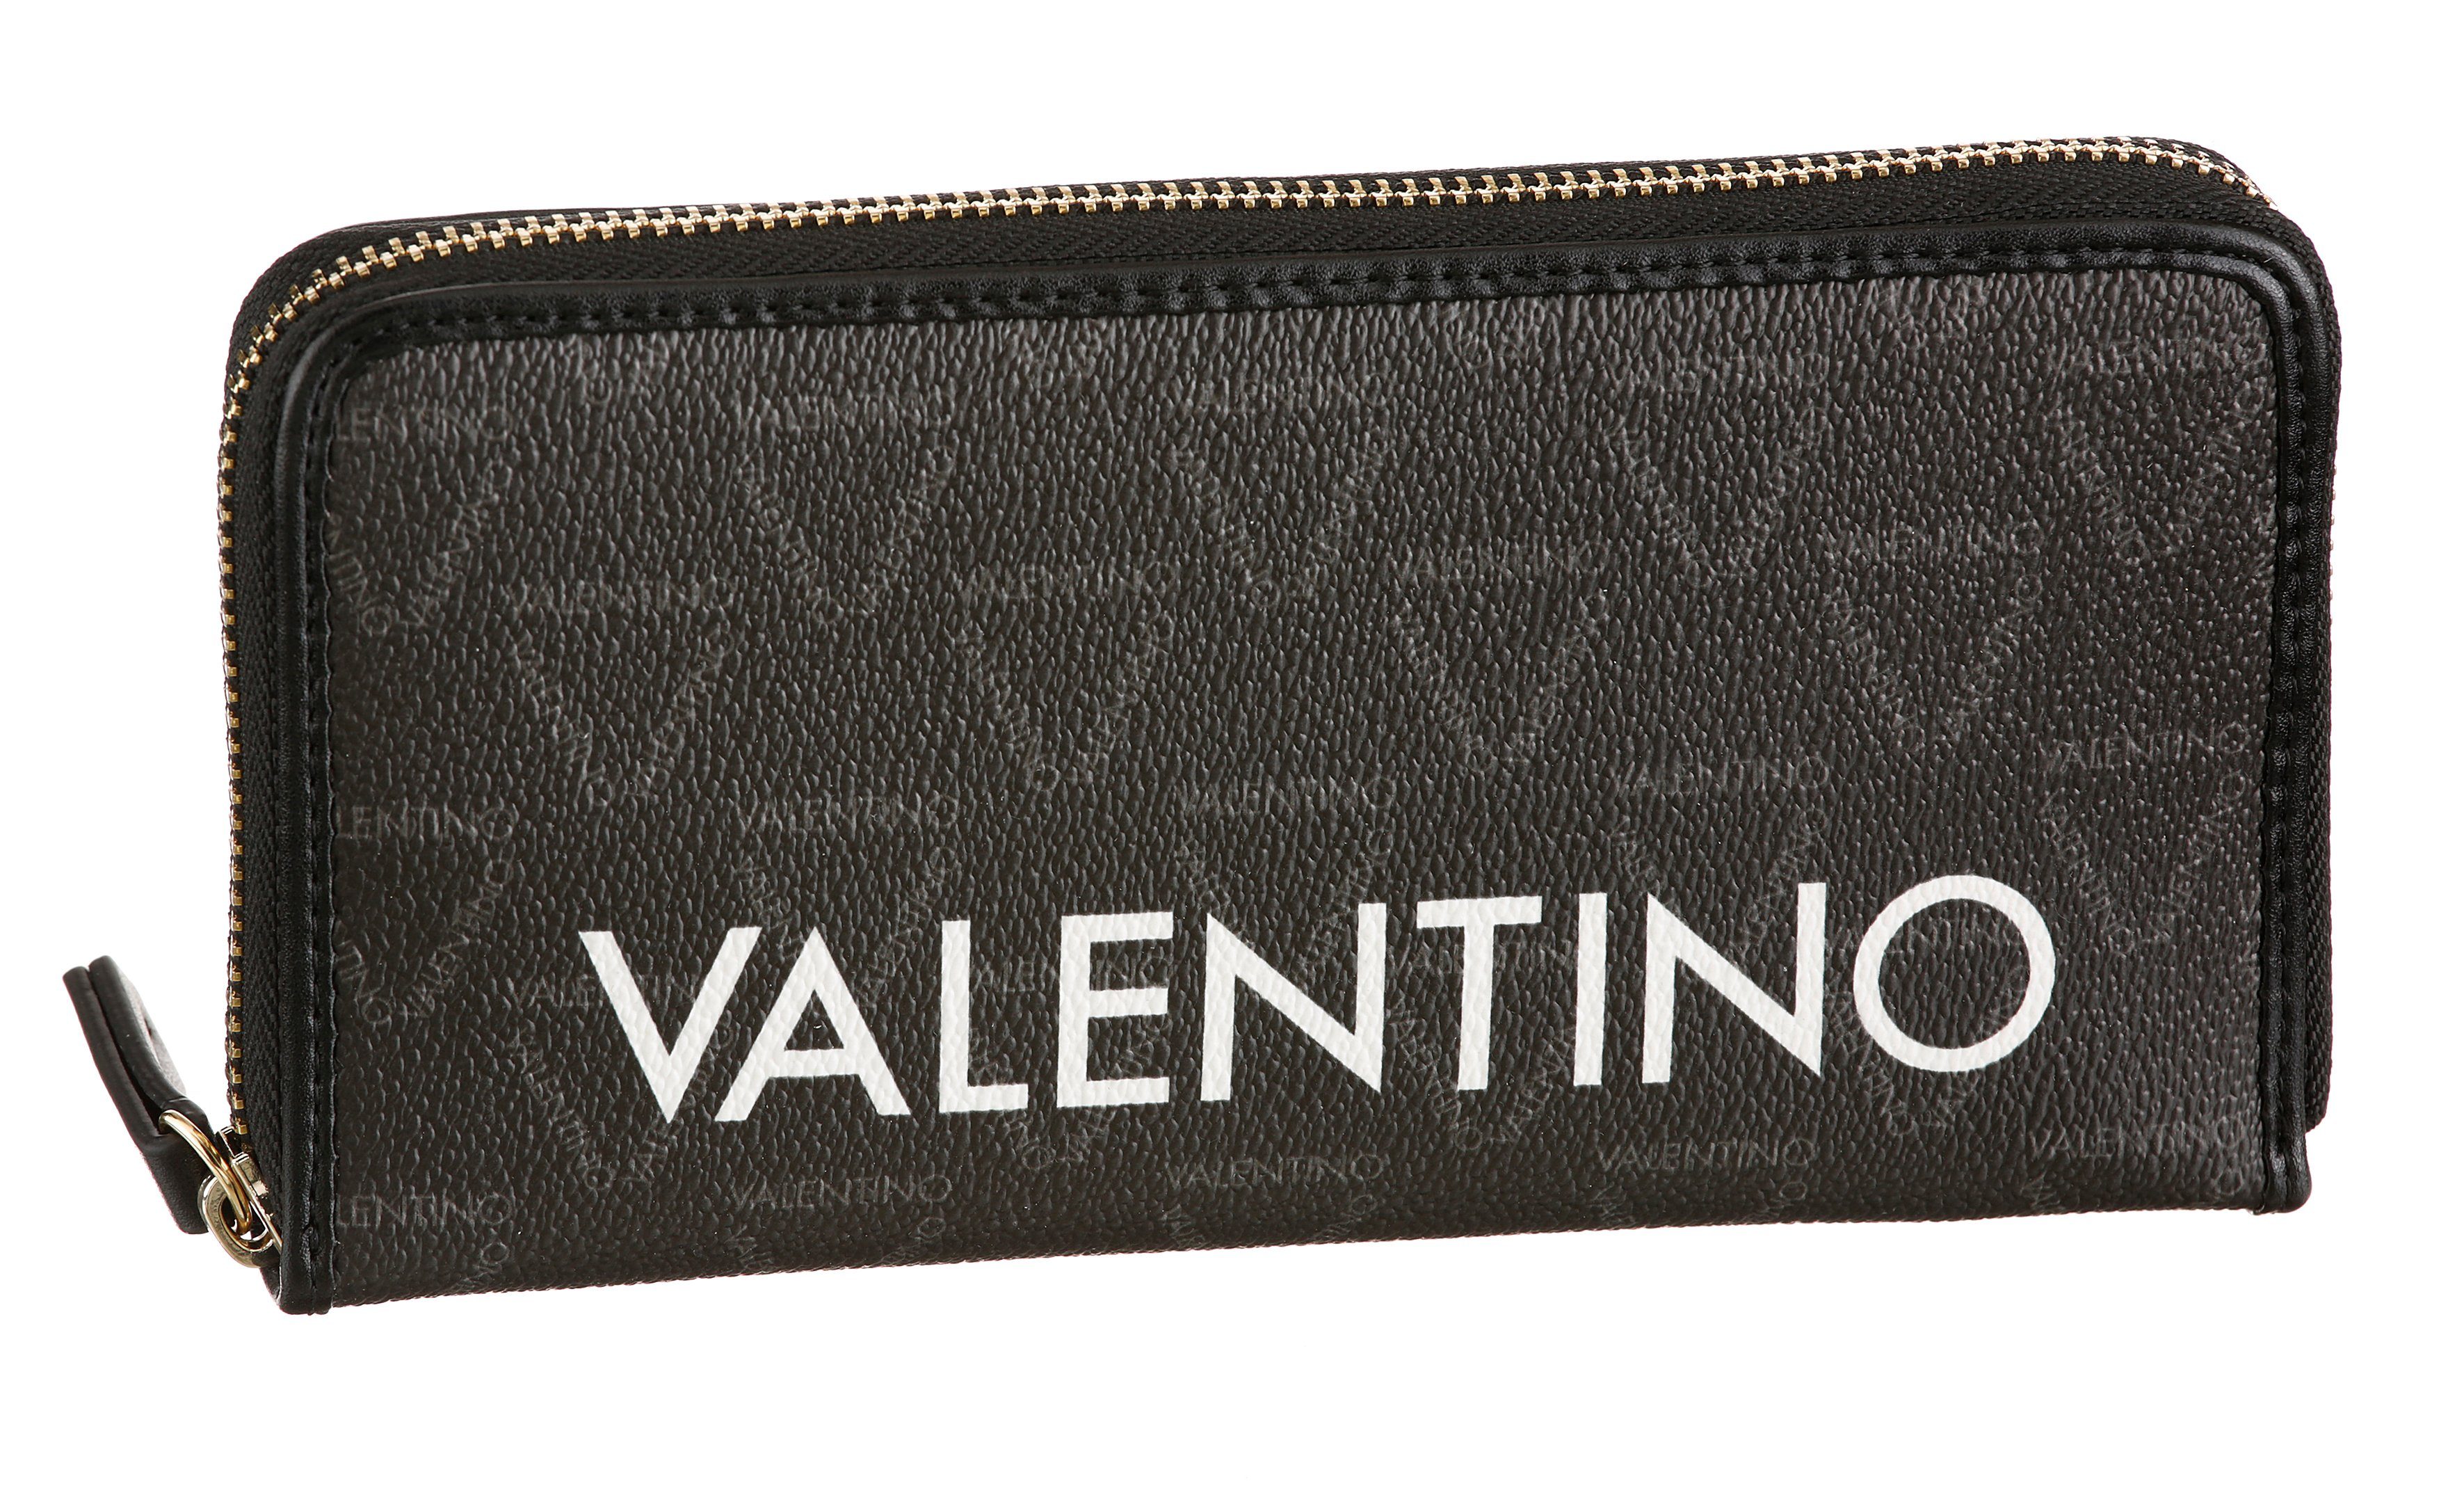 VALENTINO BAGS Geldbörse »LIUTO«, mit schickem Logo Print online kaufen |  OTTO